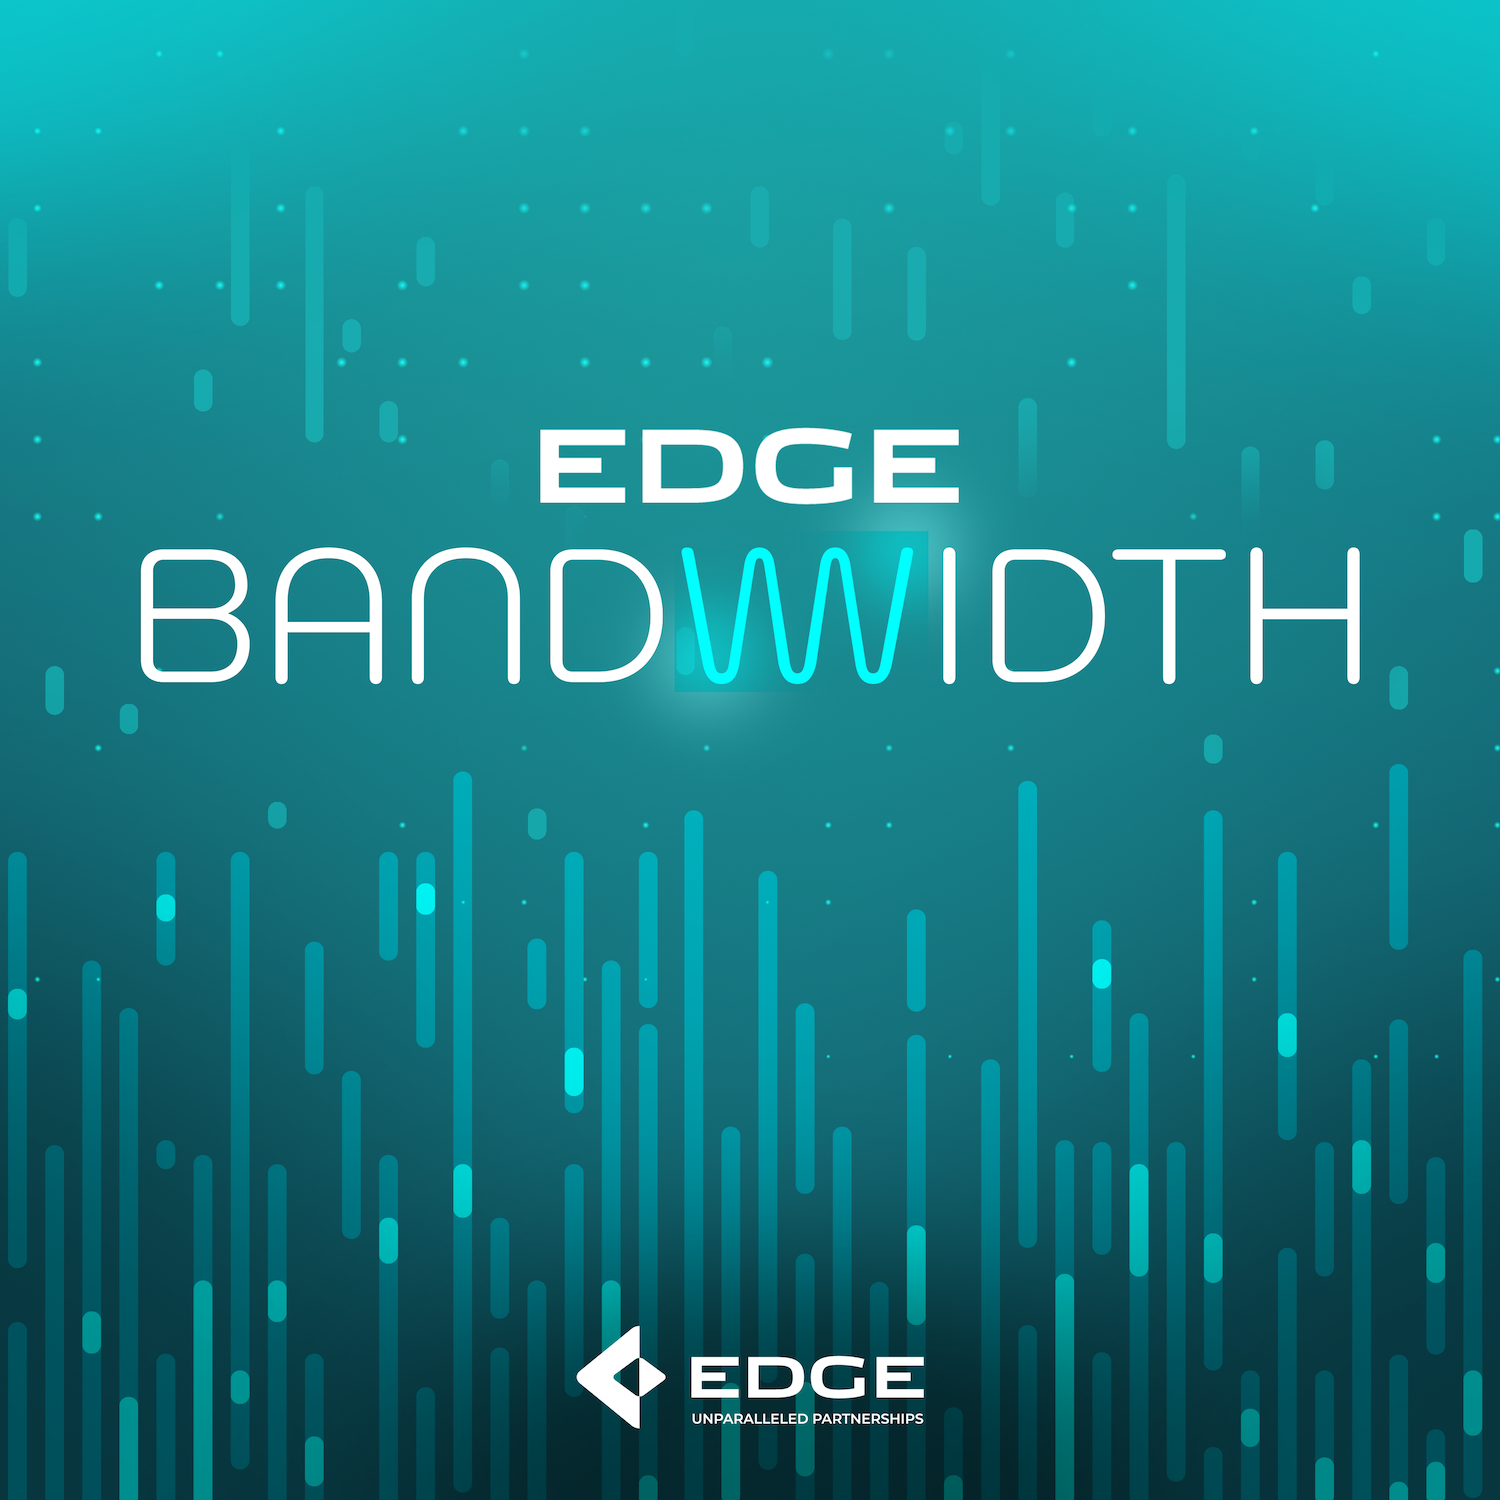 EDGE Bandwidth